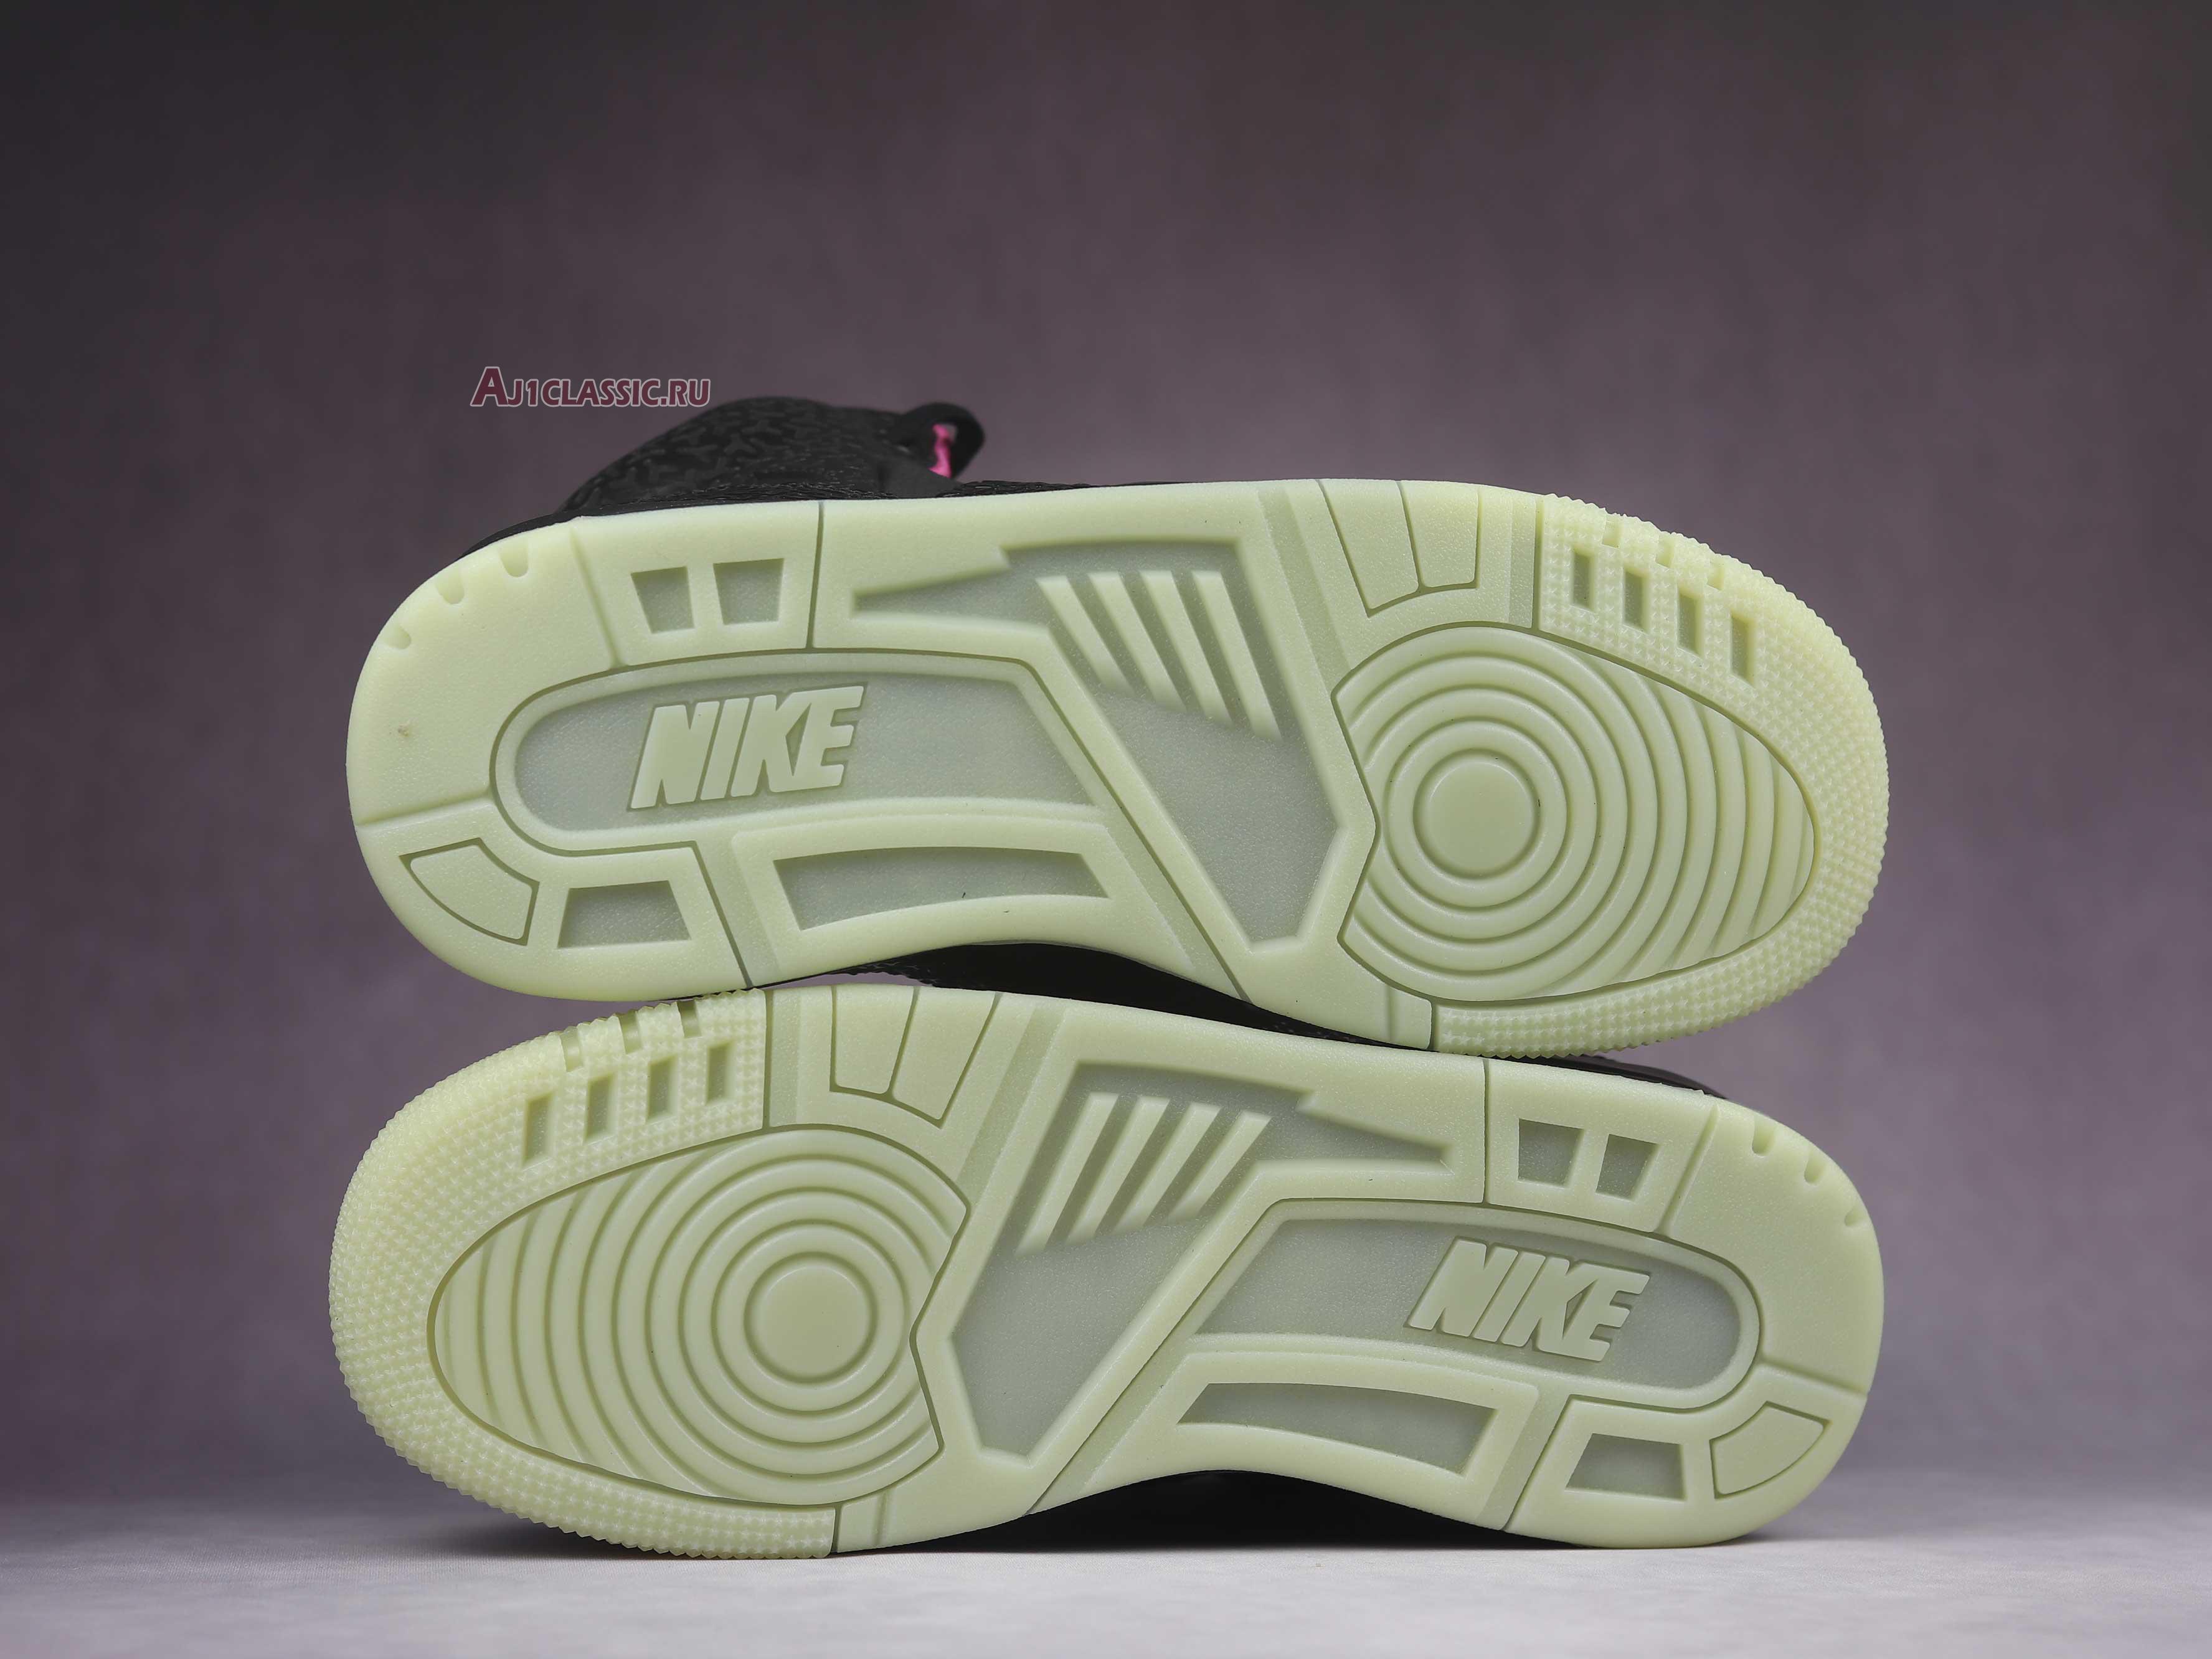 Nike Air Yeezy 1 "Blink" 366164-003